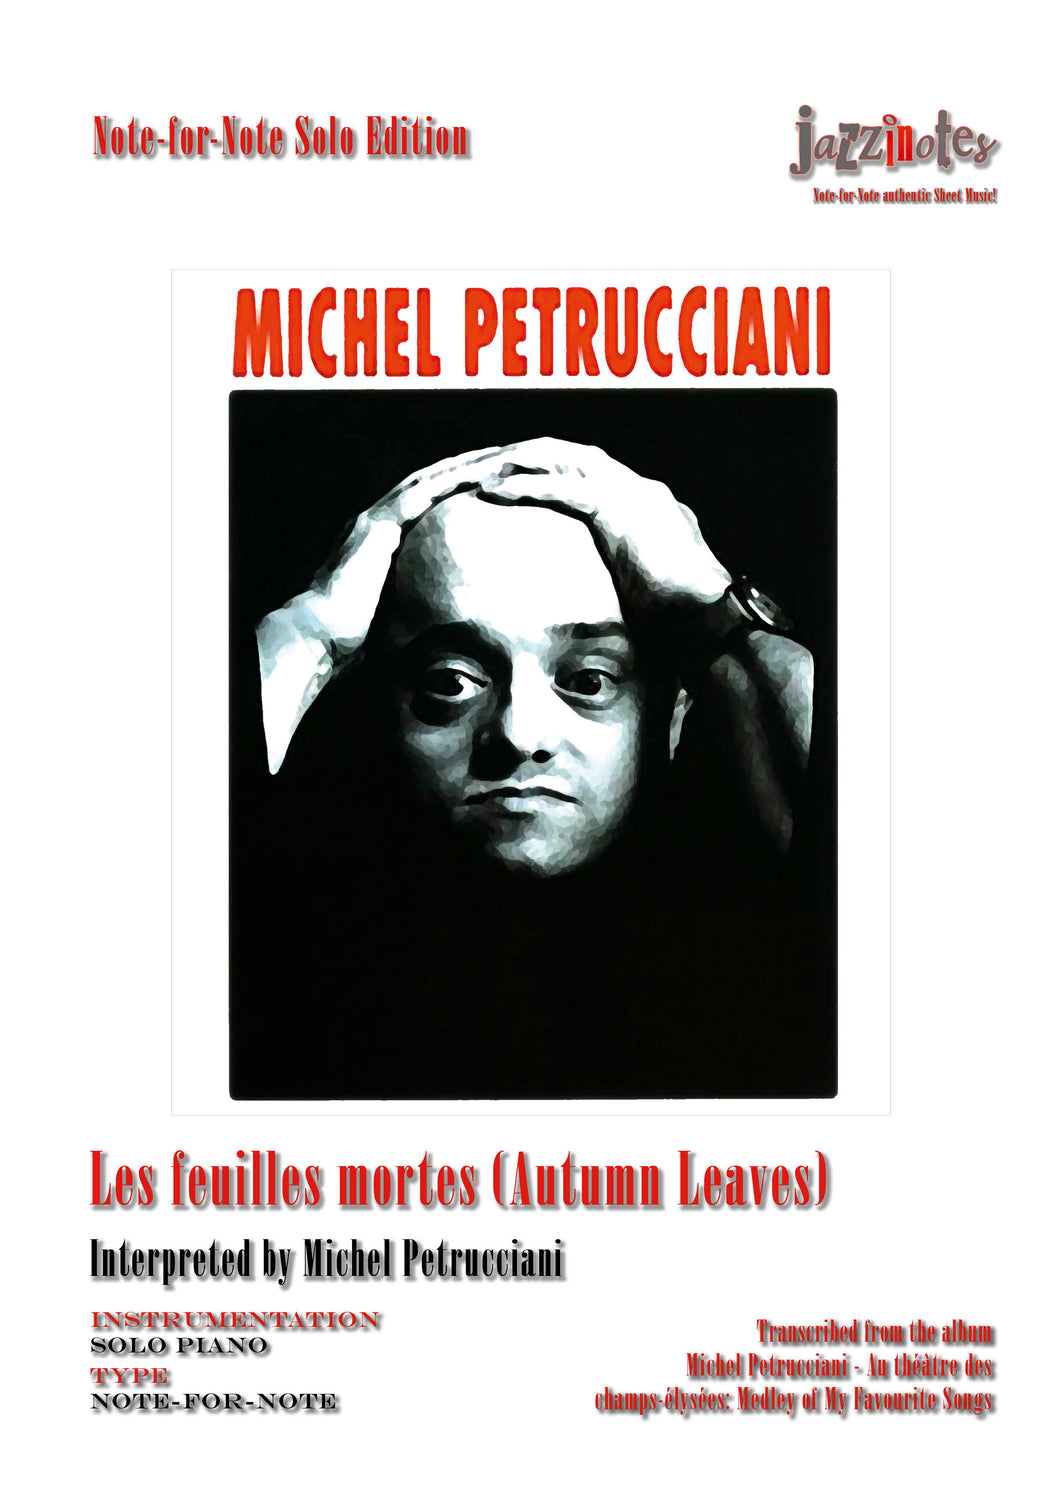 Petrucciani, Michel: Autumn Leaves, Section (Les feuilles mortes) (Live) - Sheet Music Download